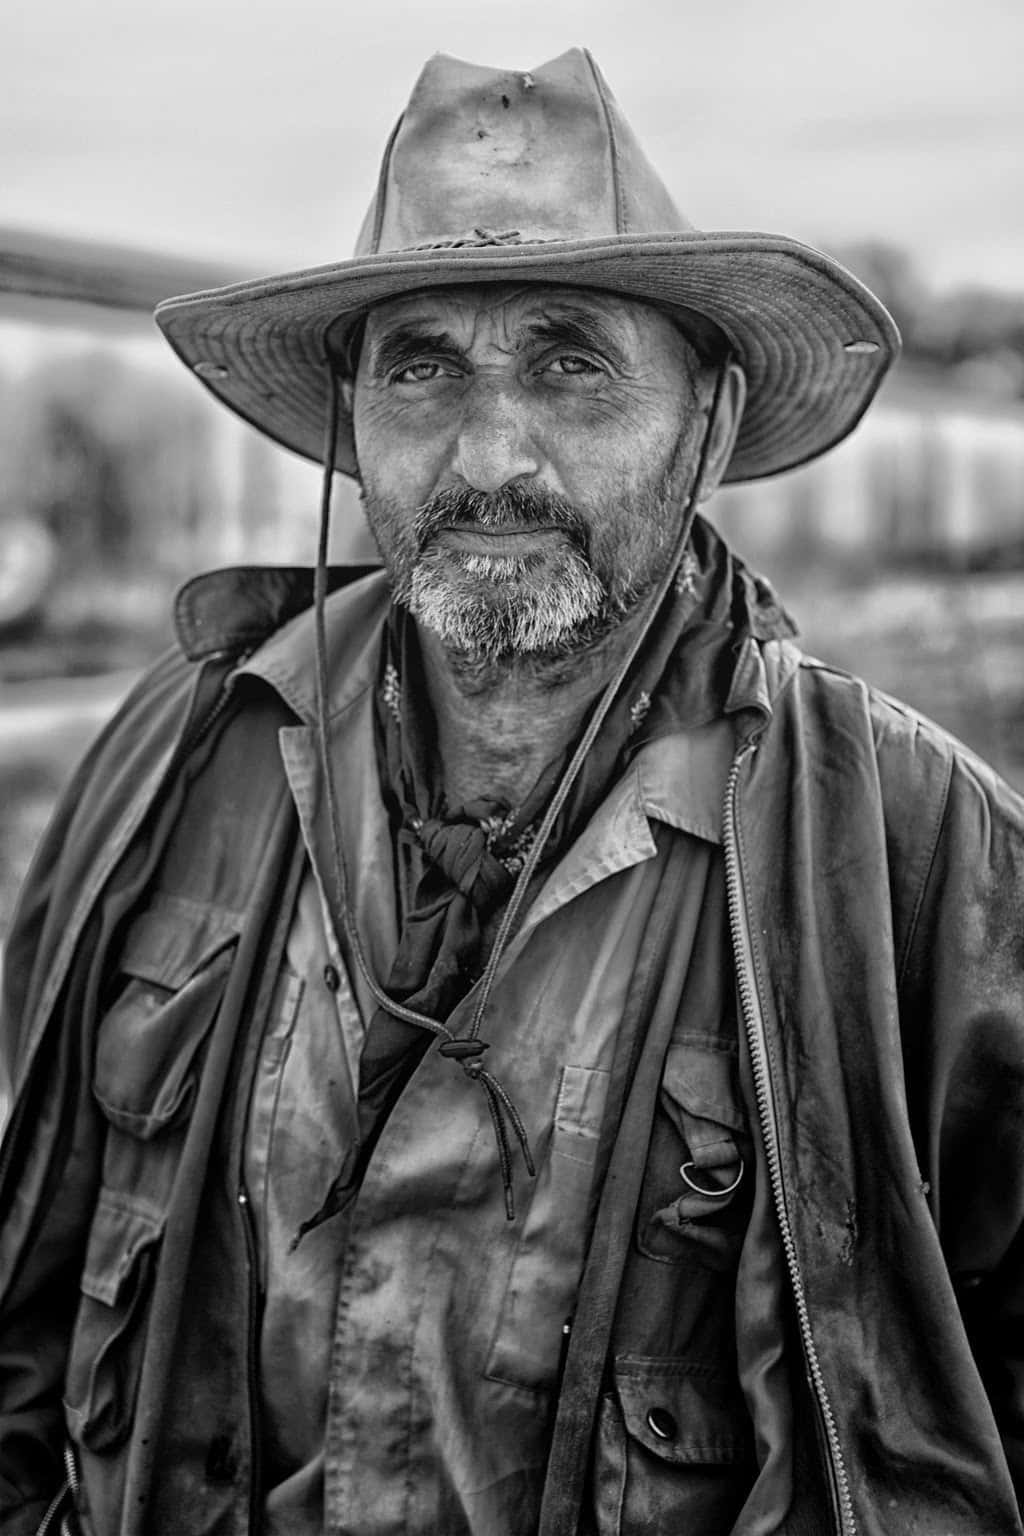 Gammalporträttbild Av En Cowboy I Gråskala